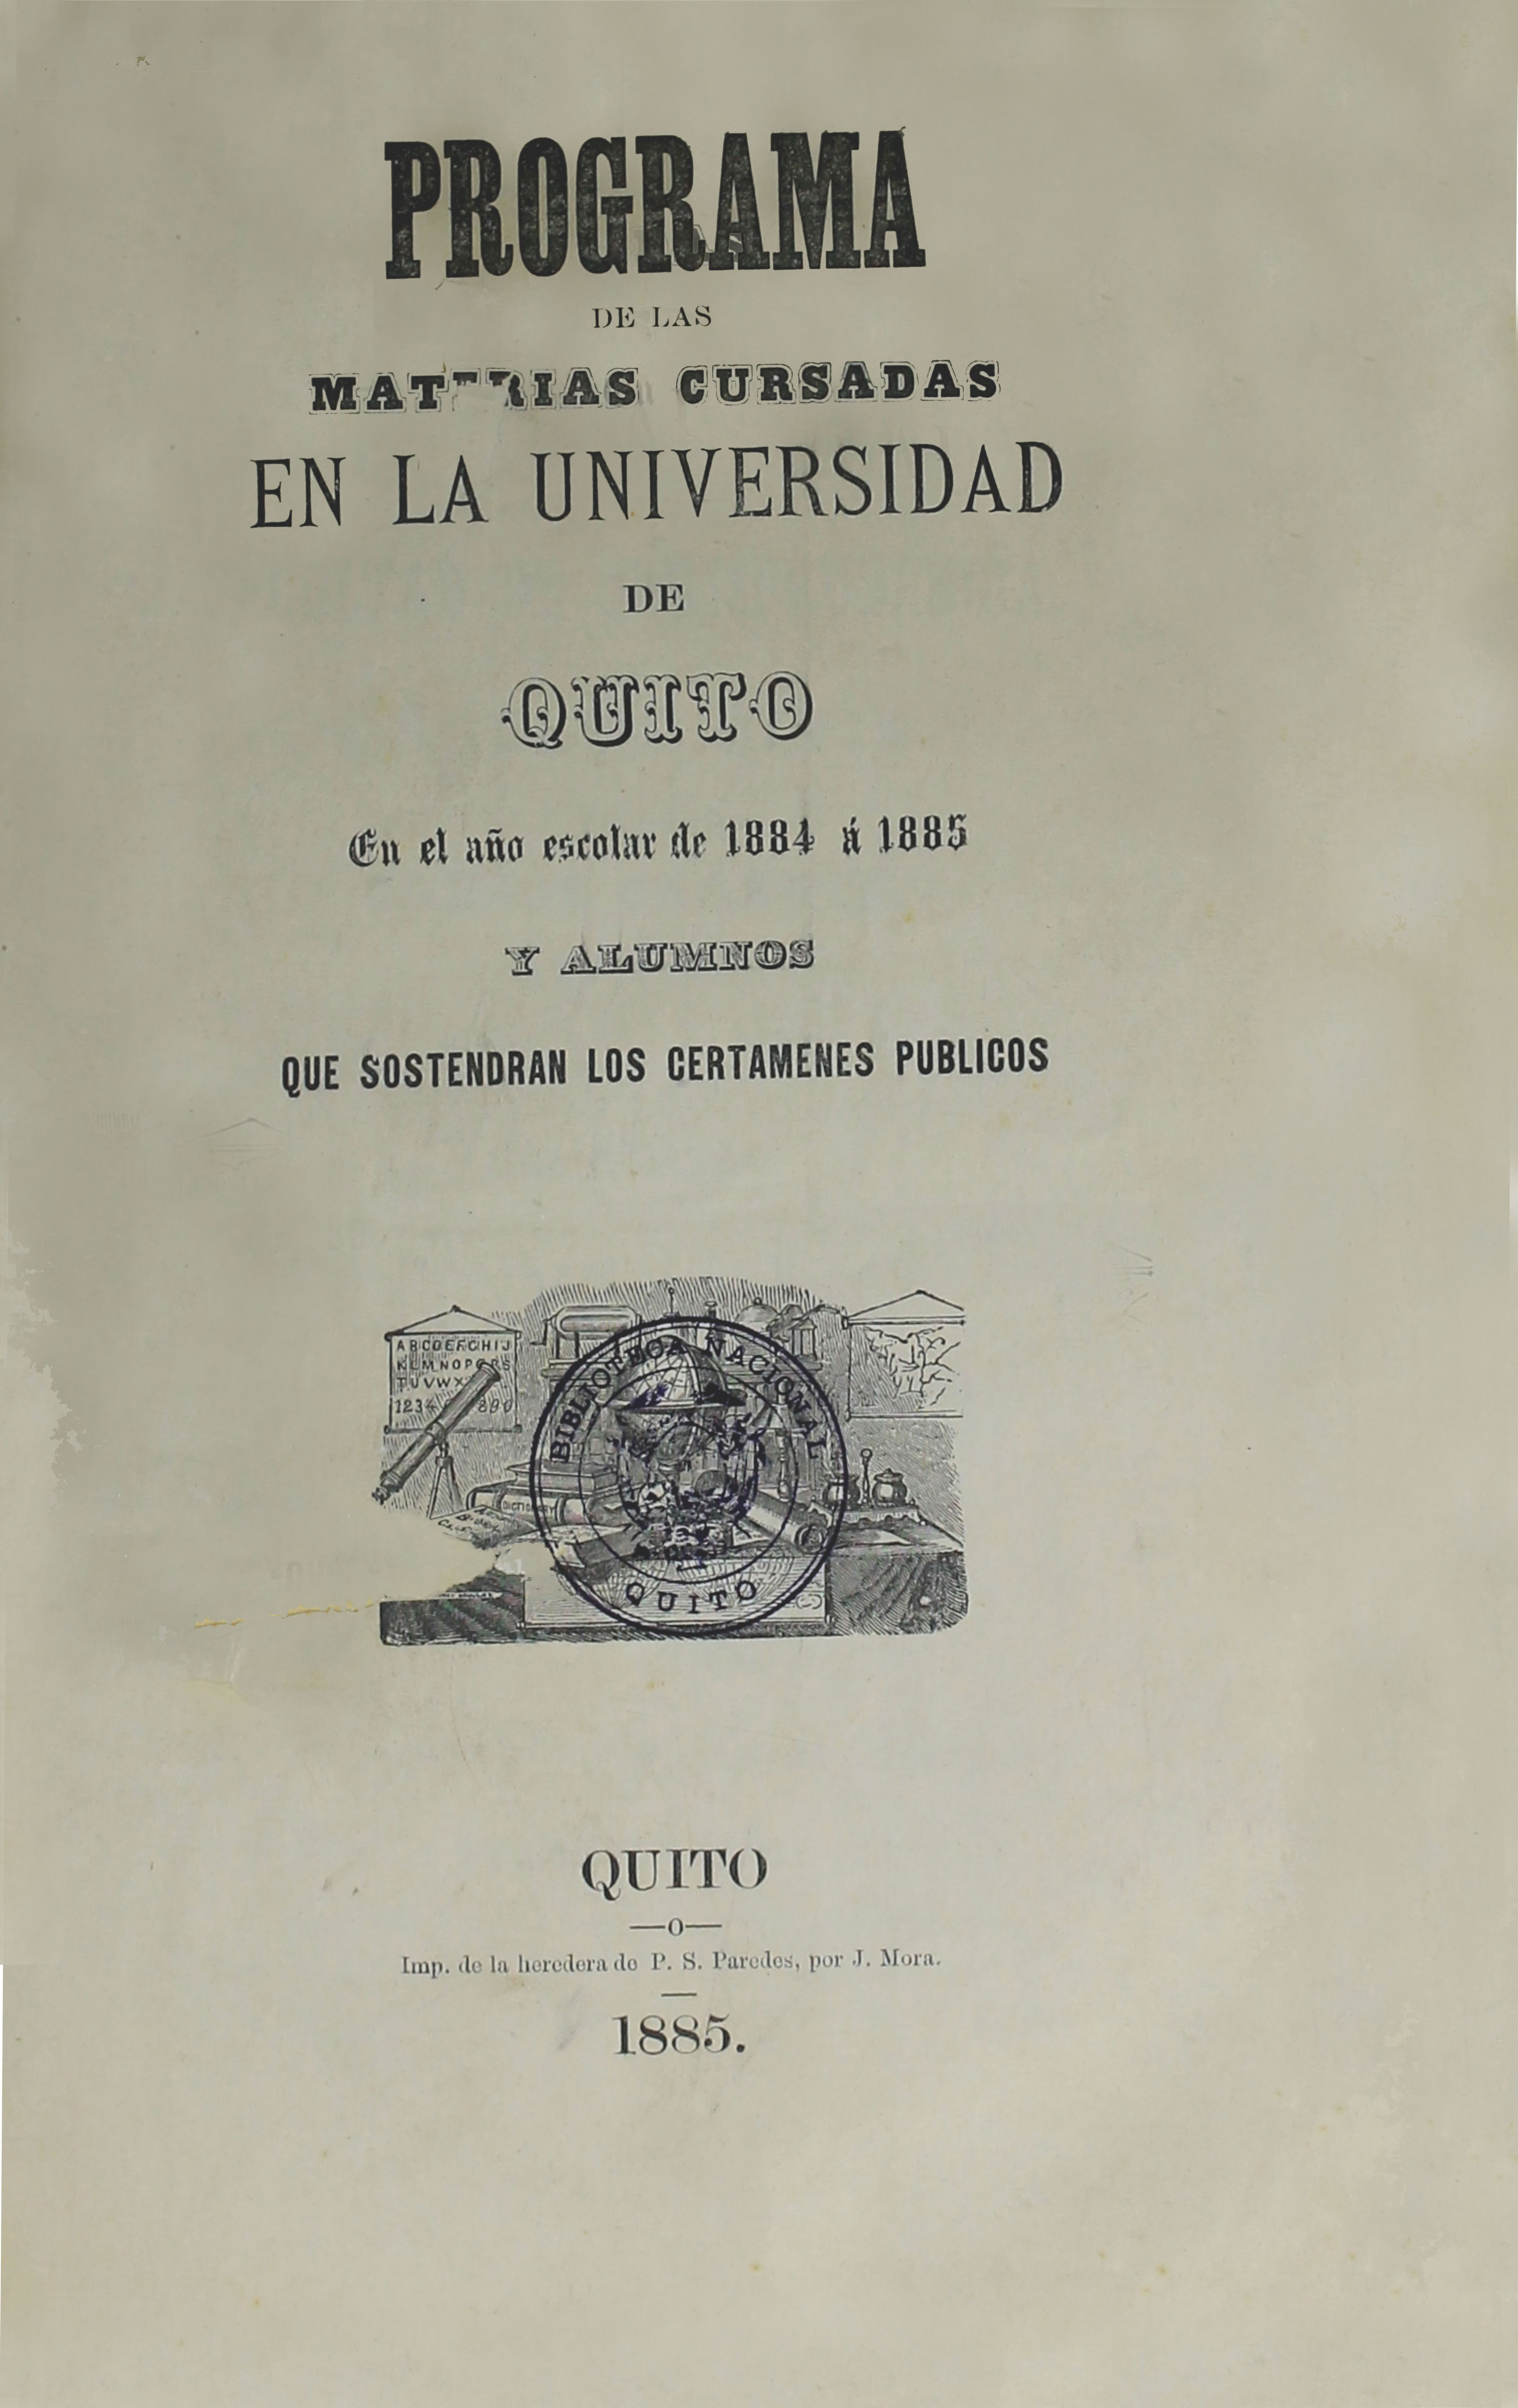 Programa de las materias cursadas en la Universidad de Quito. En el año escolar 1884 a 1885 y alumnos que sostendrán los certámenes públicos (Folleto).